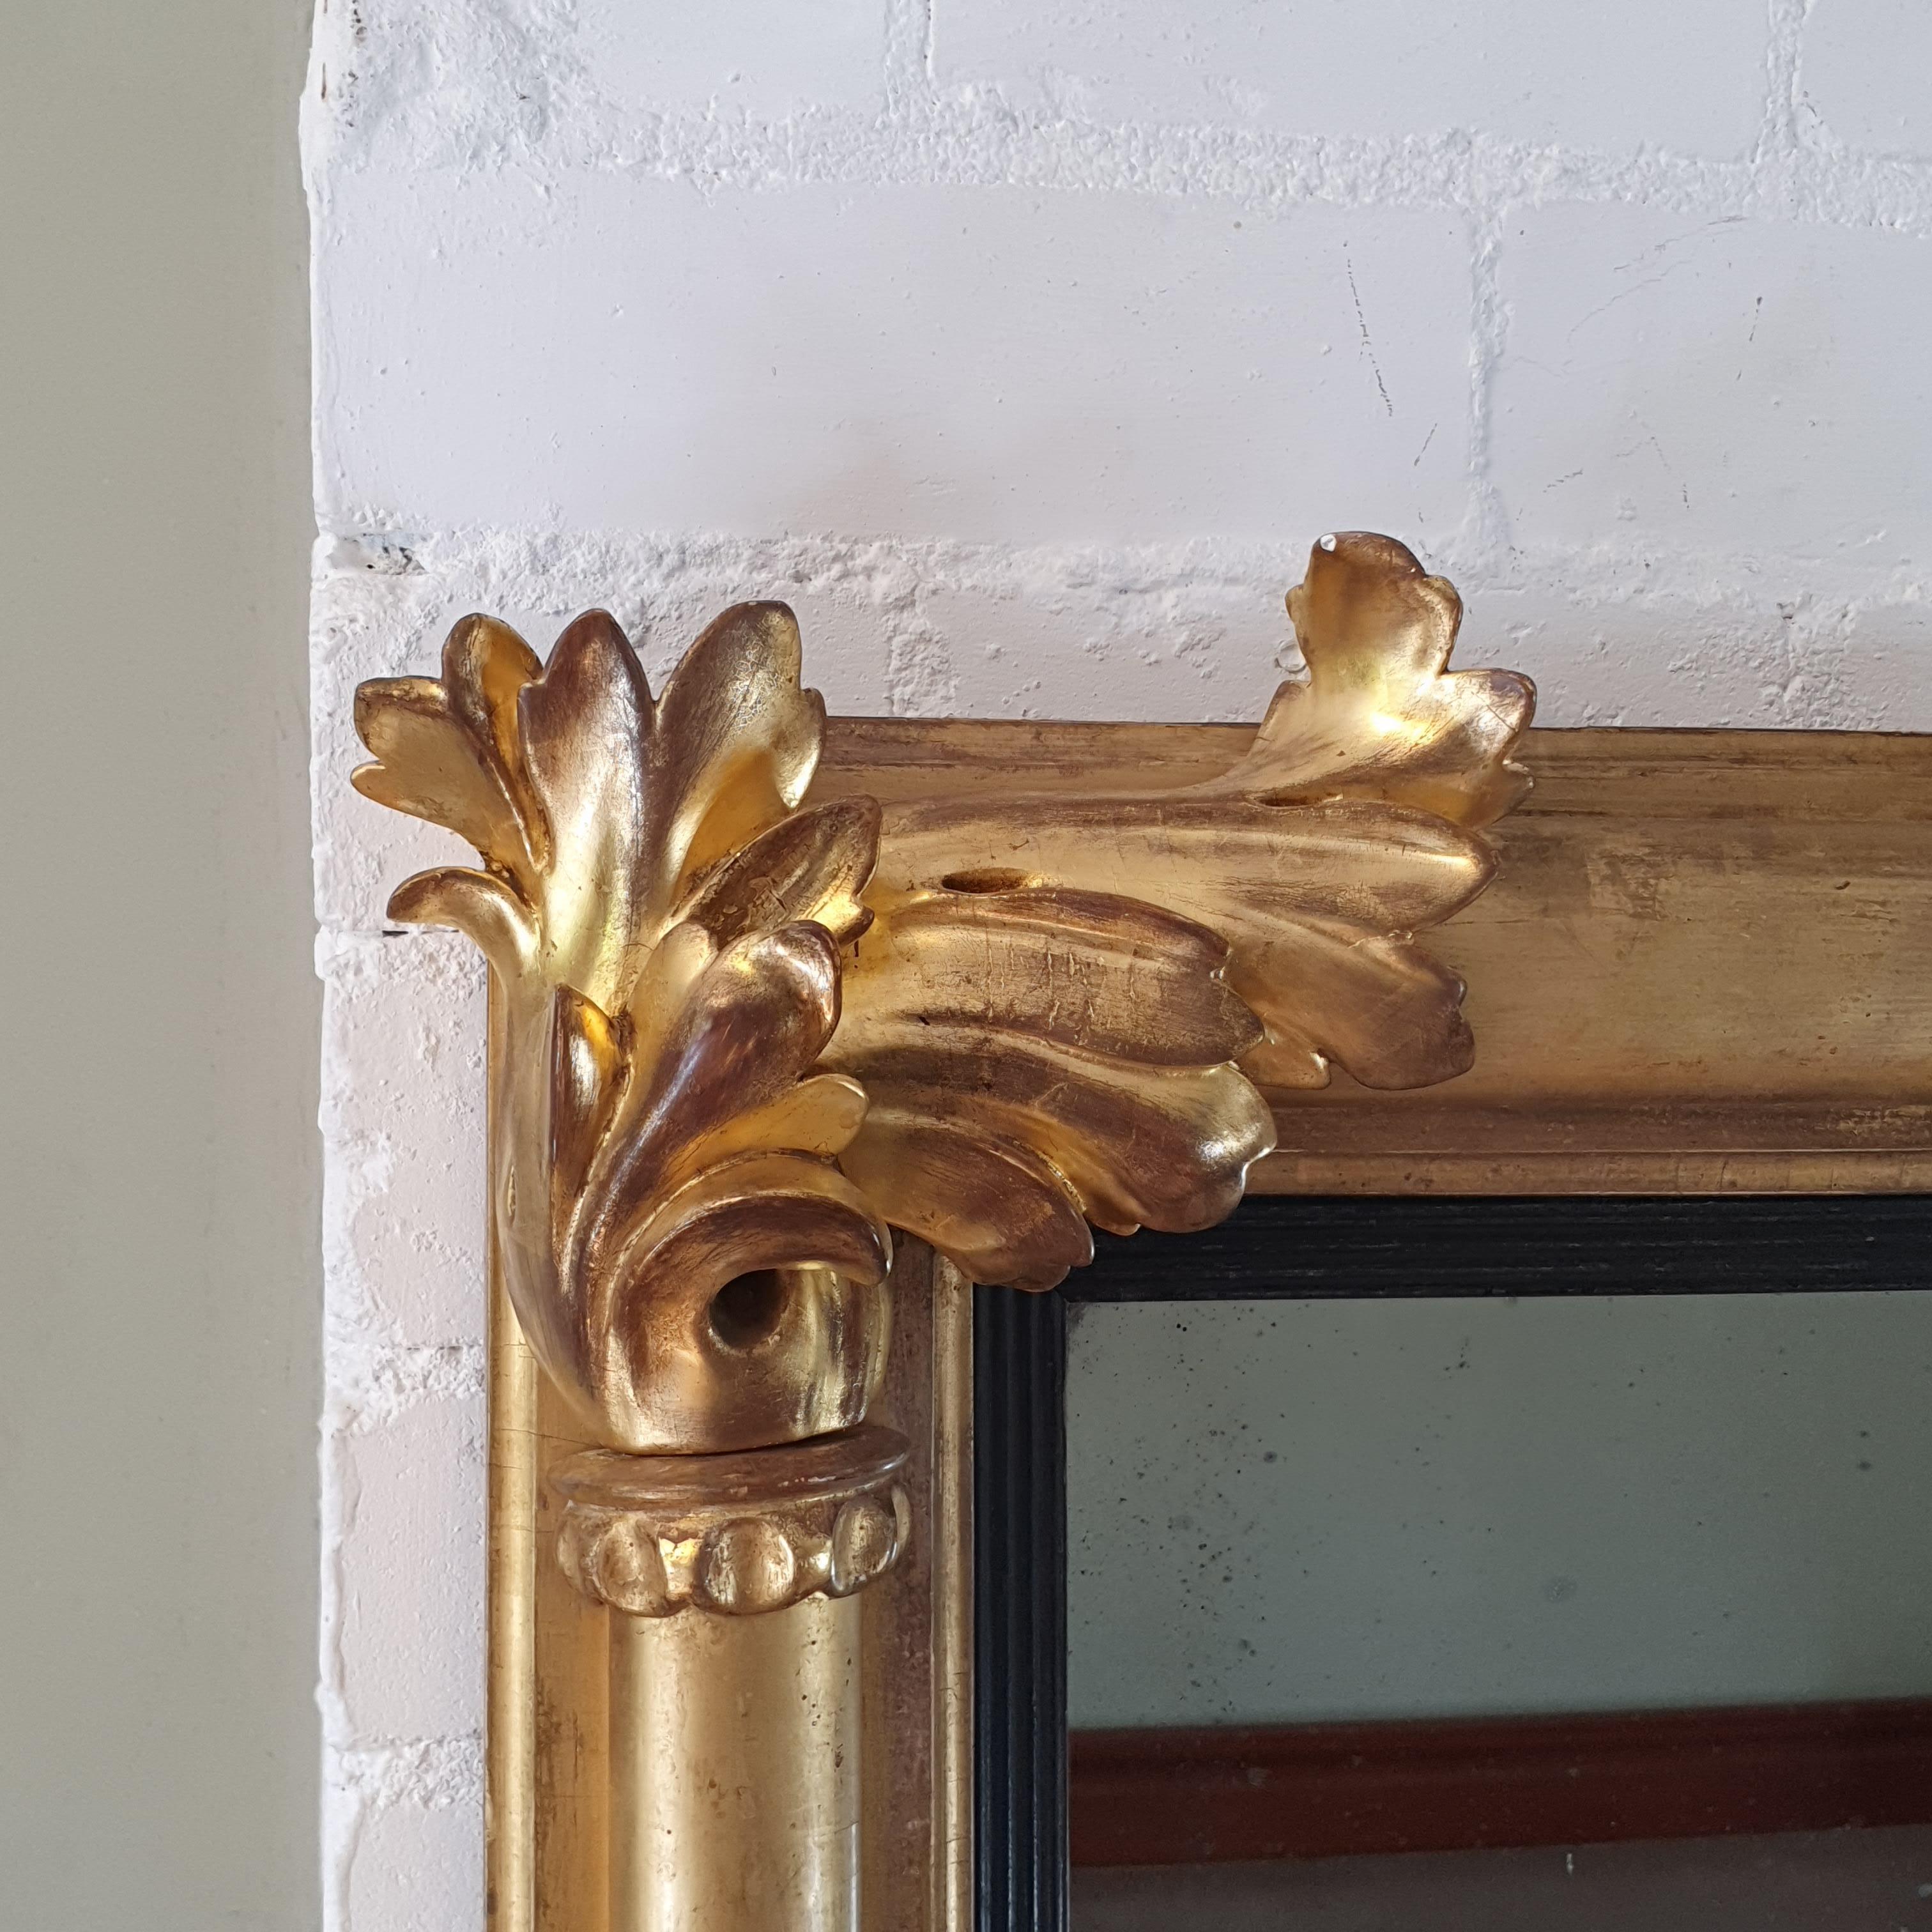 William IV. geschnitzter Landschaftsspiegel aus vergoldetem Holz, die rechteckige Spiegelplatte wird von Säulen umgeben, die mit Blattschnitzereien verziert sind. Spiegelplatte aus Quecksilbergelatine.